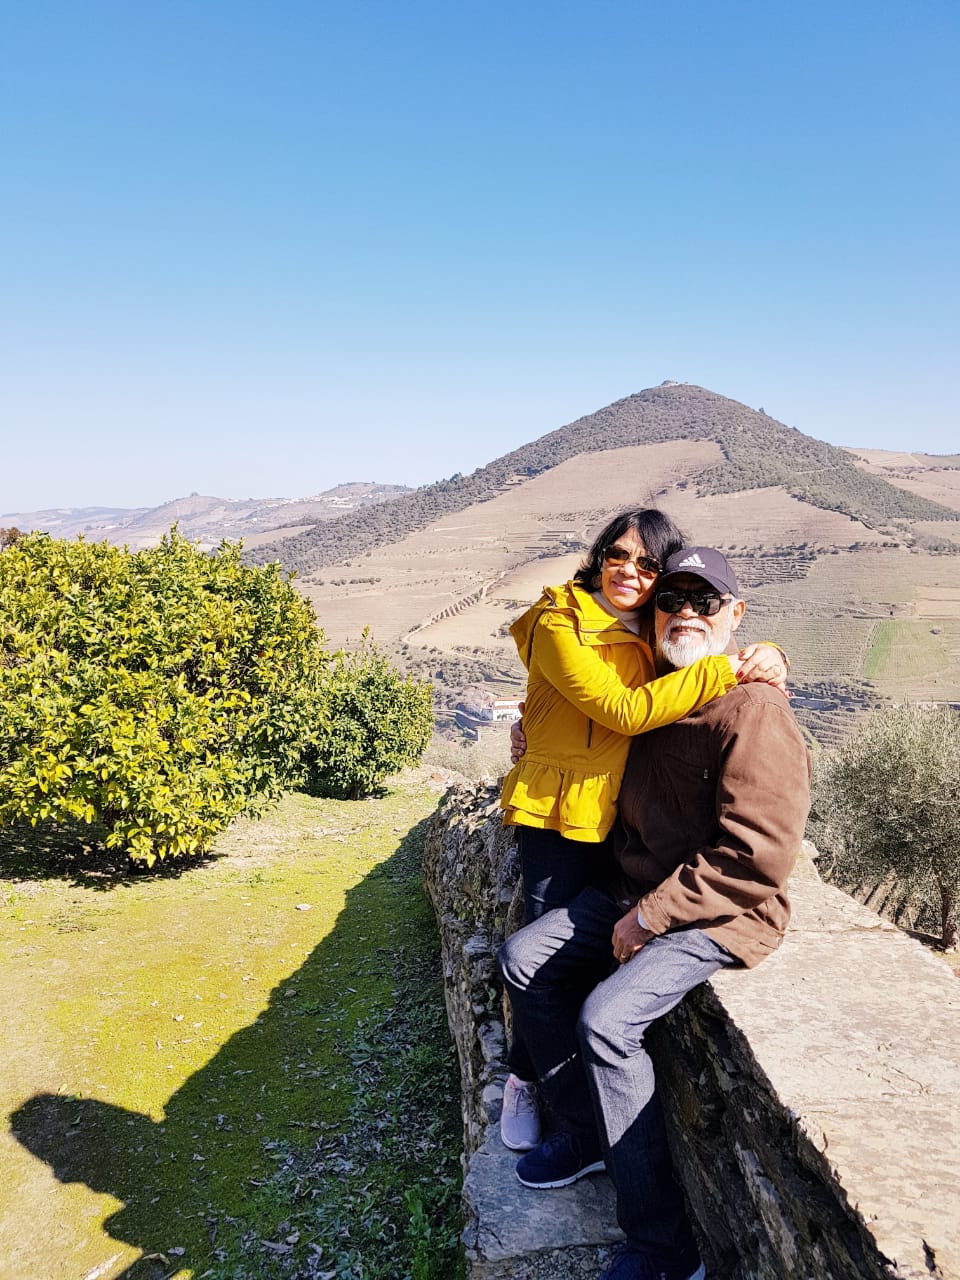  Foto de Carlos e sua esposa sentados em um muro em uma paisagem montanhosa